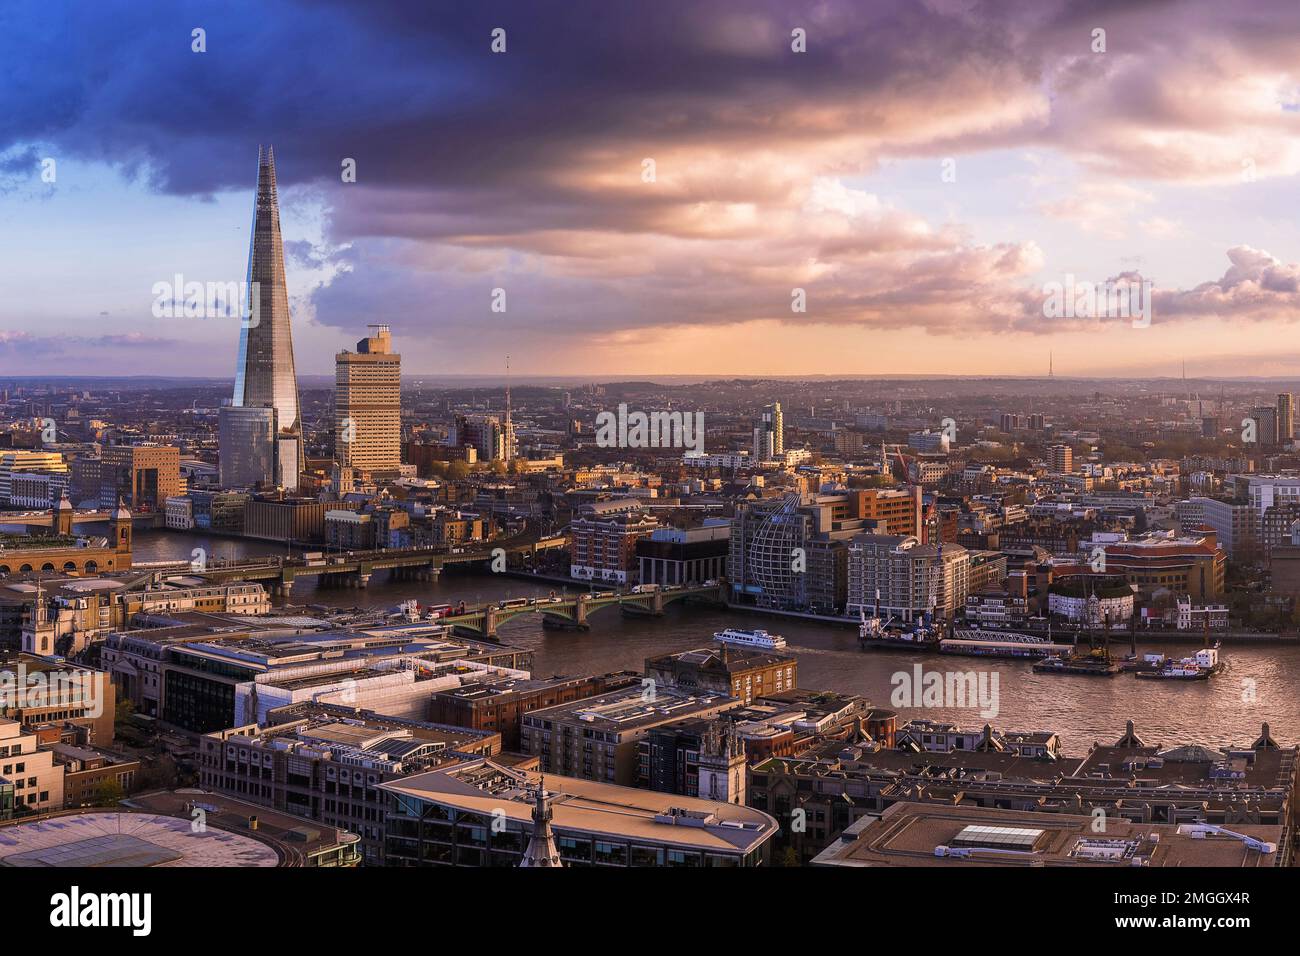 Londra, Regno Unito - veduta aerea del centro di Londra con il Tamigi, il Southwark Bridge, il London Bridge, il grattacielo Shard e il tramonto dorato con dra Foto Stock